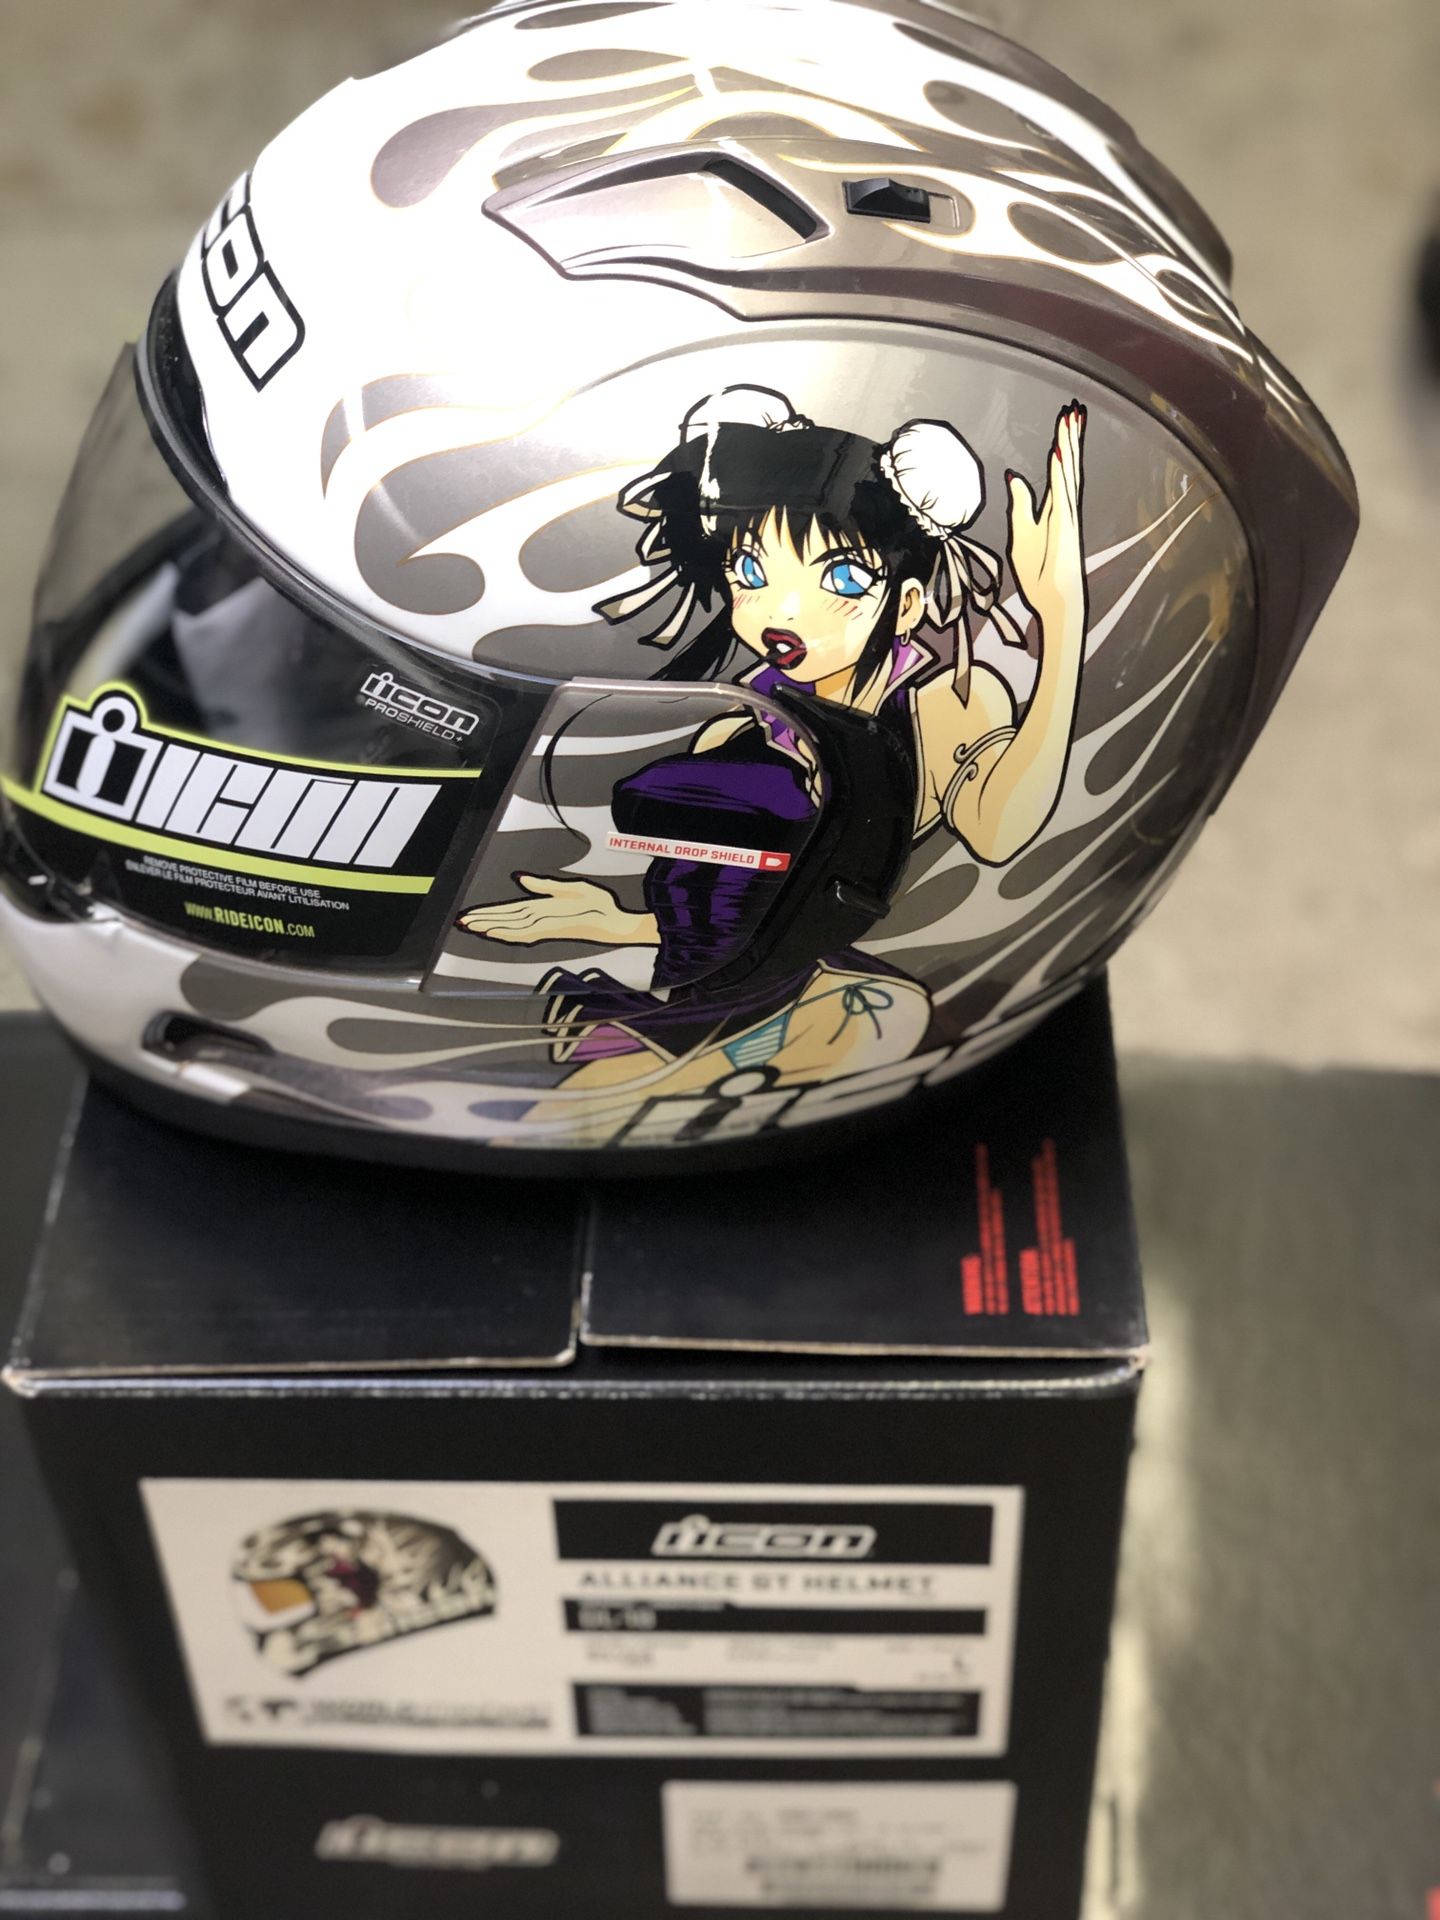 Brand new icon motorcycle helmet